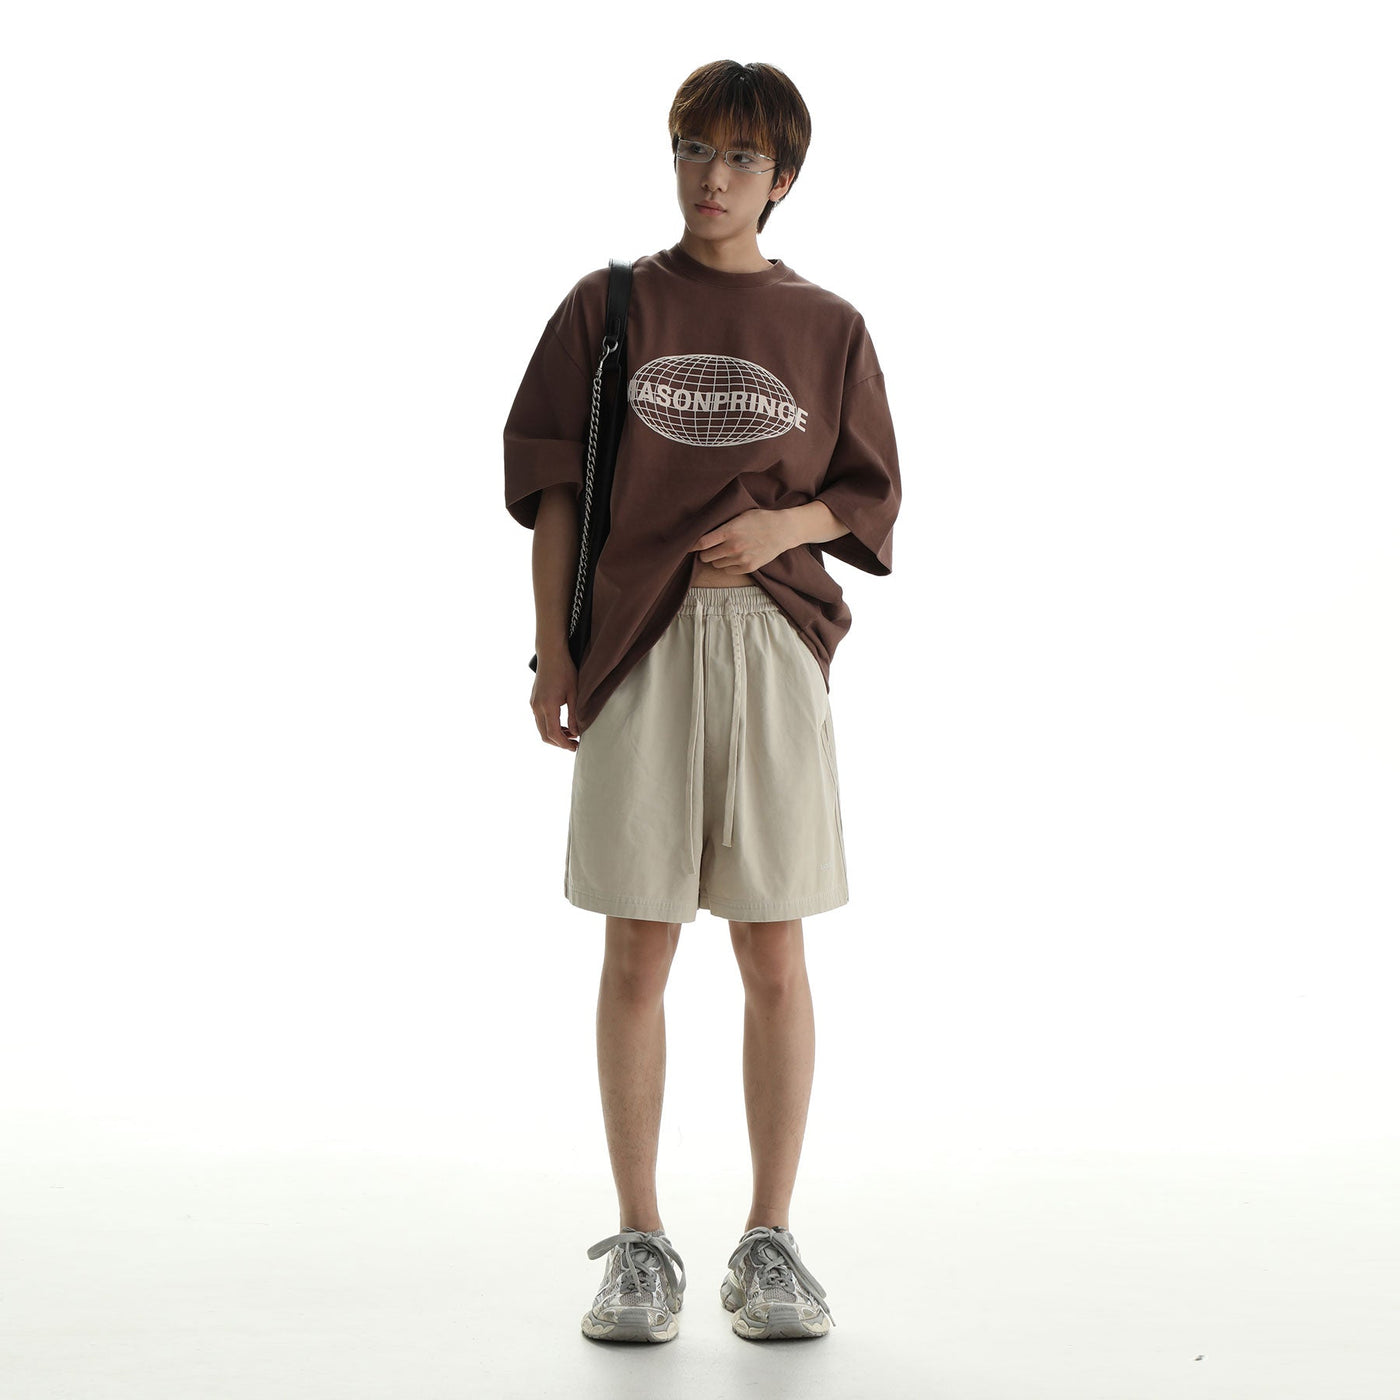 Mason Prince Drawstring Three-Bar Sports Shorts Korean Street Fashion Shorts By Mason Prince Shop Online at OH Vault